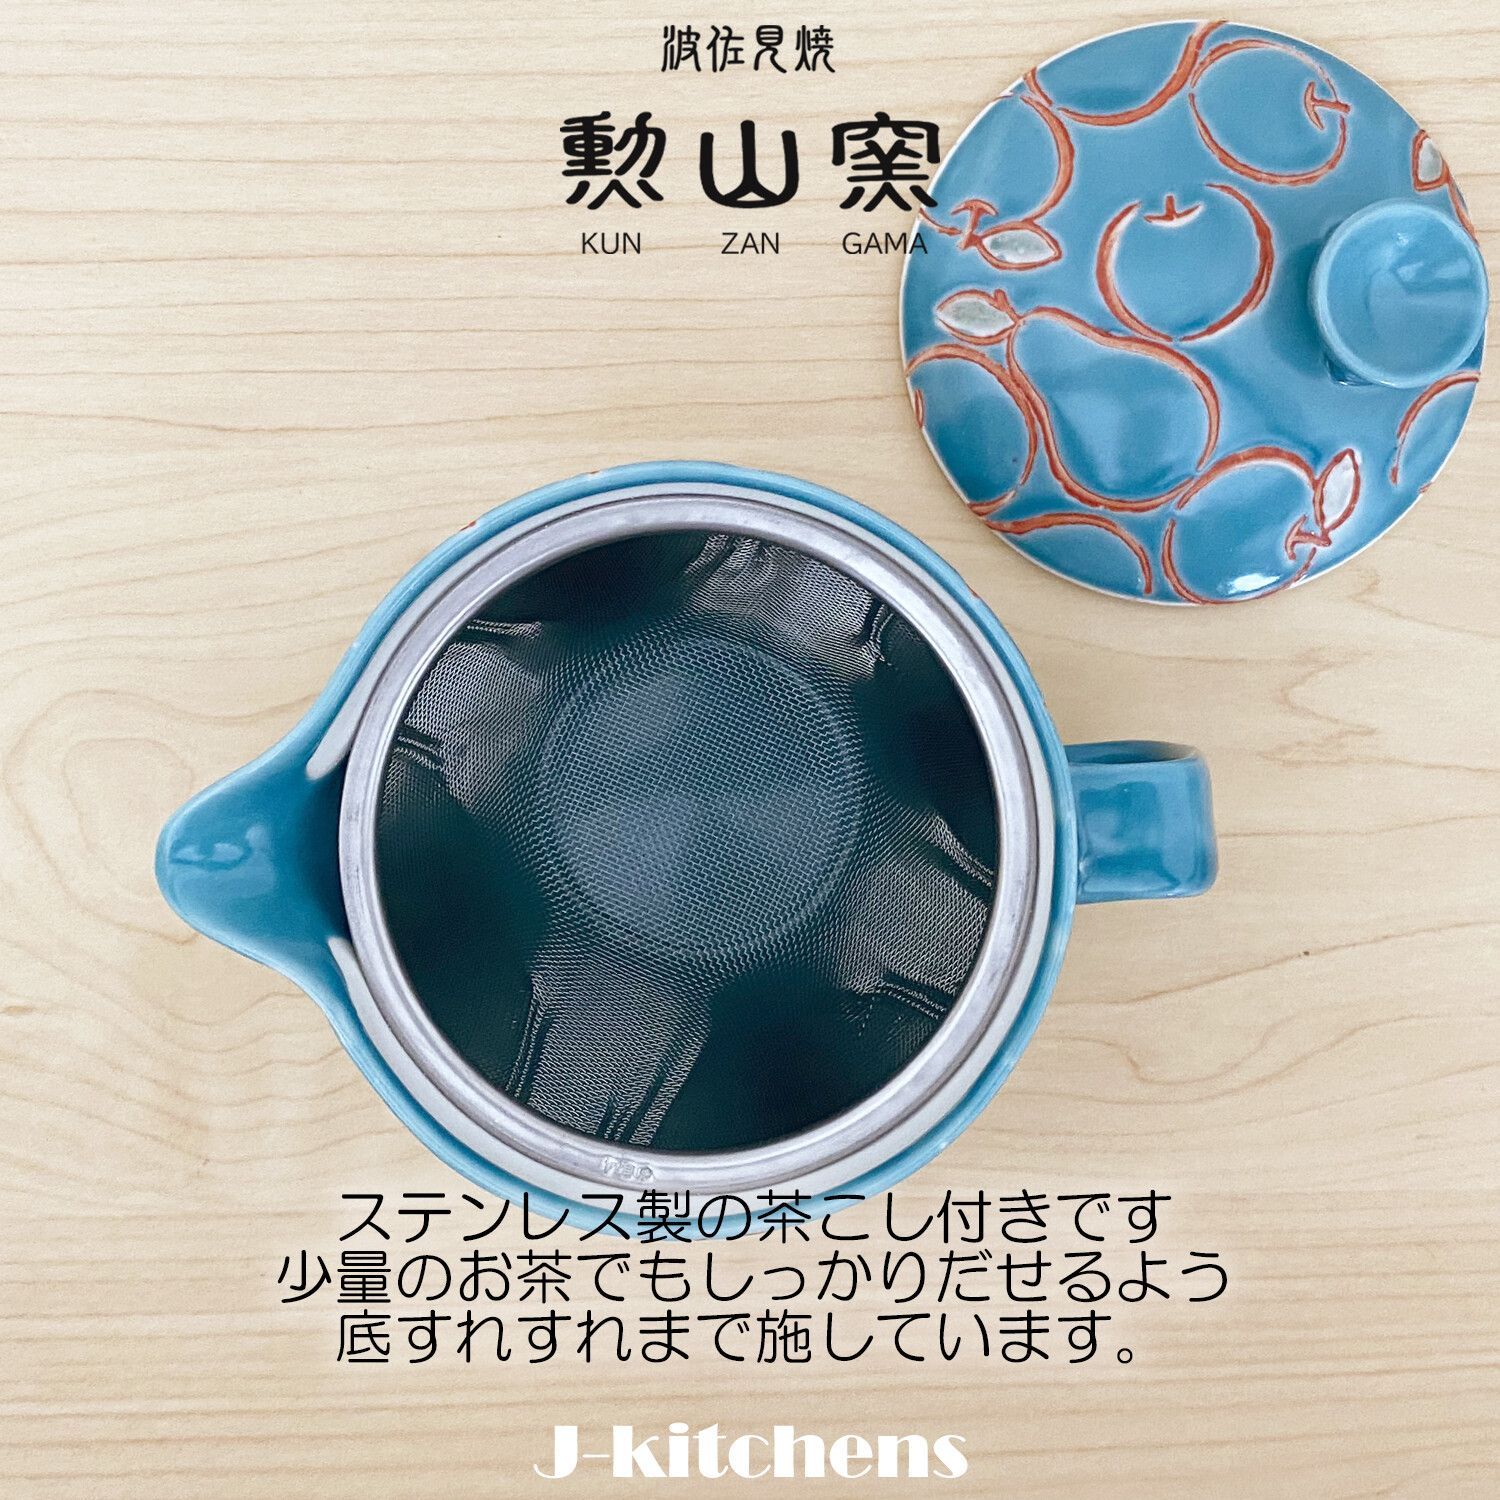 高い品質遠藤商事 業務用 深型茶こし 日本製 ステンレス鋼 BTY33 (シングル) 共柄 食器、グラス、カトラリー